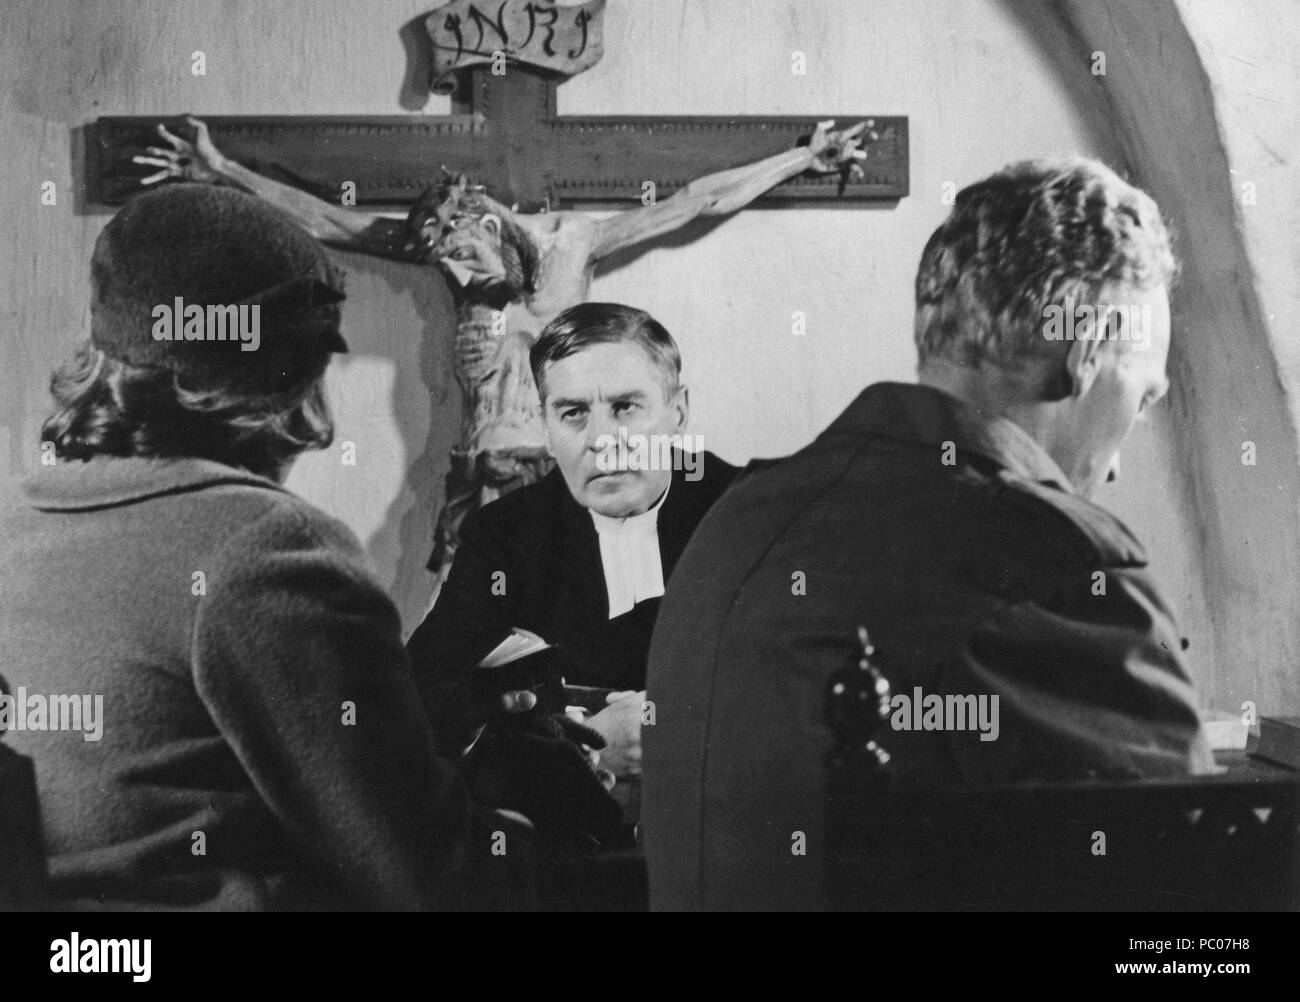 Lumière d'hiver. Film Suédois d'Ingmar Bergman de 1963 avec Max von Sydow et Gunnar Björnstrand. Ingmar Bergman. 1918-2007. Directeur du cinéma suédois. Banque D'Images